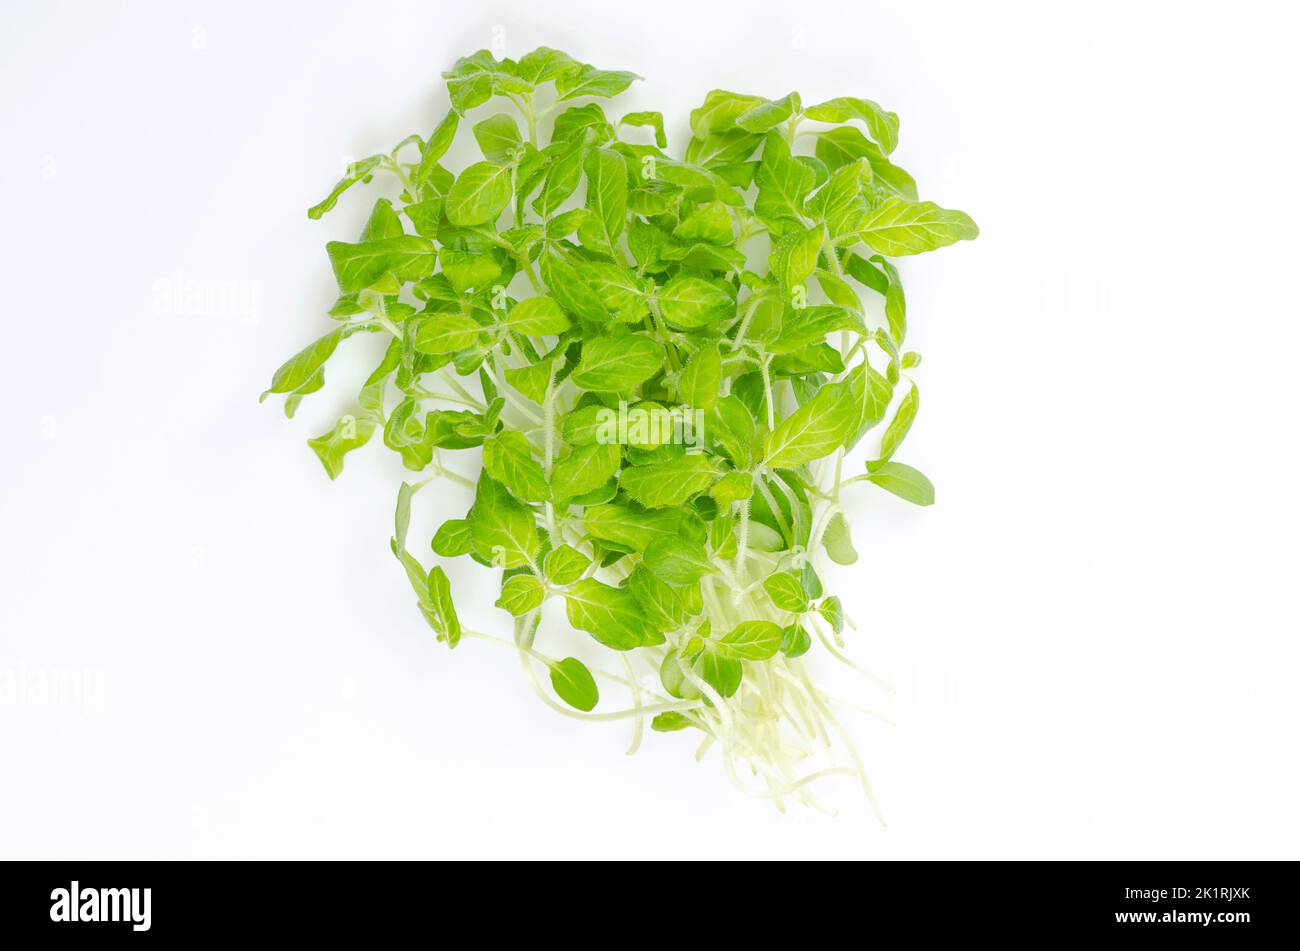 Haufen Sesammikrops auf weißem Hintergrund. Verzehrfertige, frische und grüne Jungpflanzen von Sesamum, auch bekannt als Benne. Stockfoto